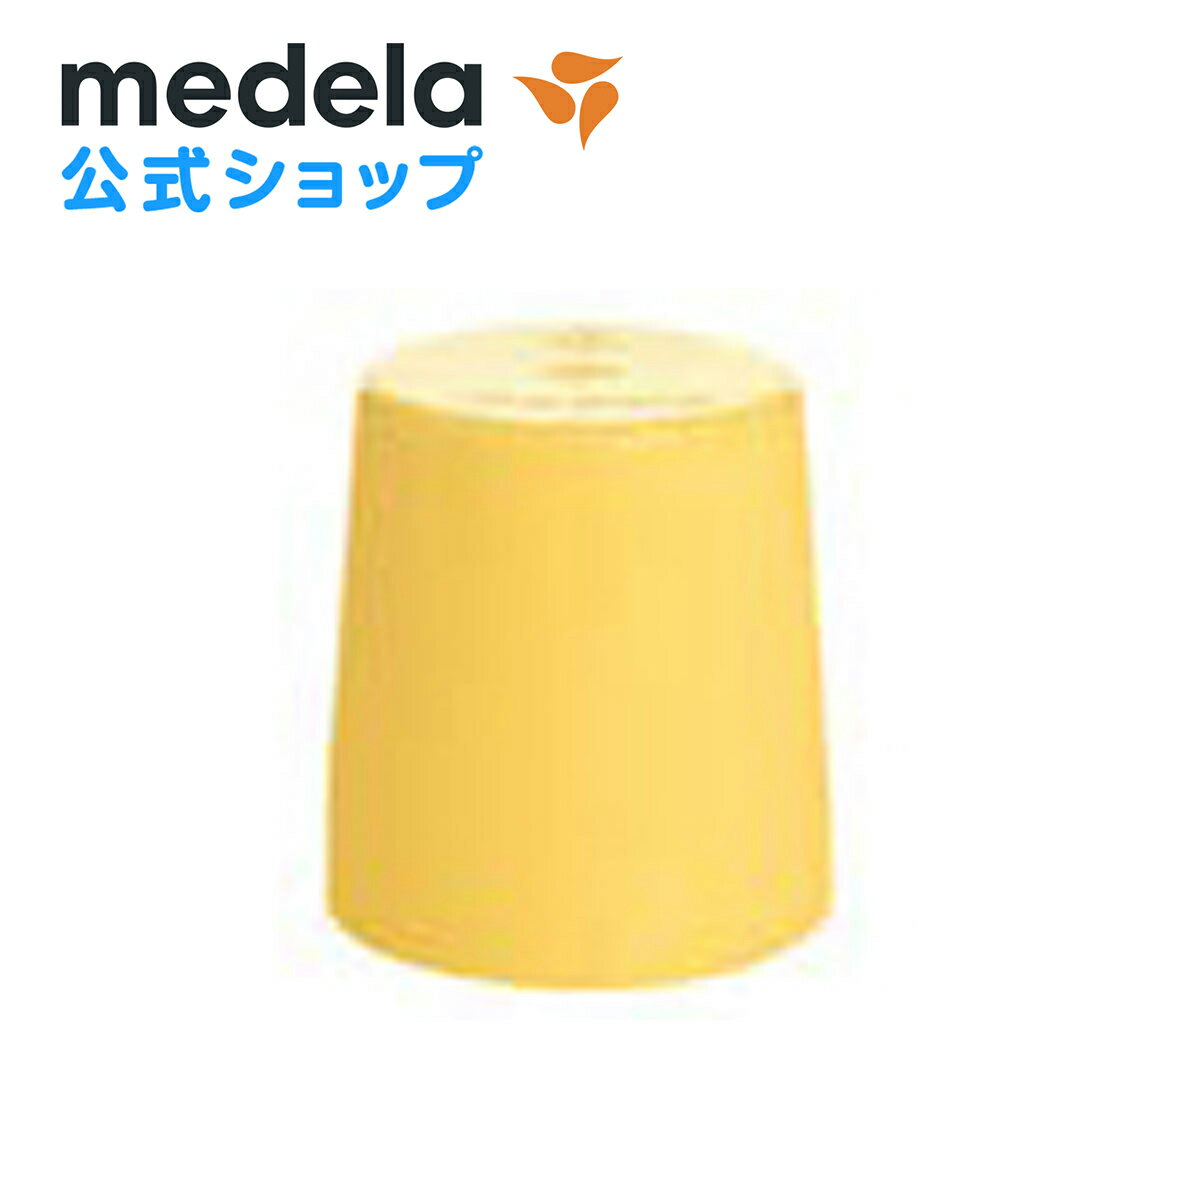 公式 Medela (メデラ) 母乳ボトル用 キャップ パーツ medela 母乳育児